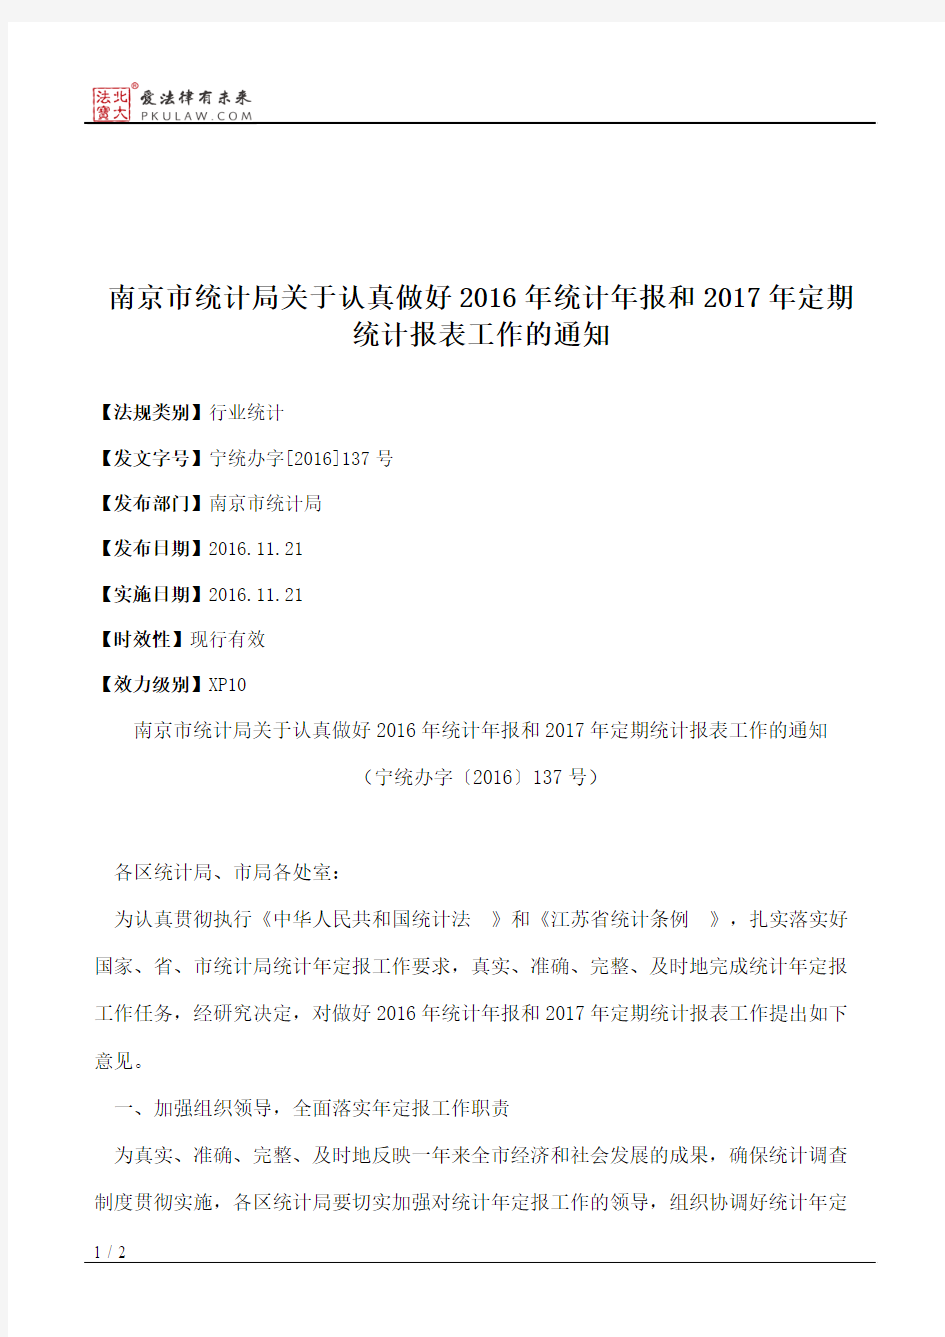 南京市统计局关于认真做好2016年统计年报和2017年定期统计报表工作的通知